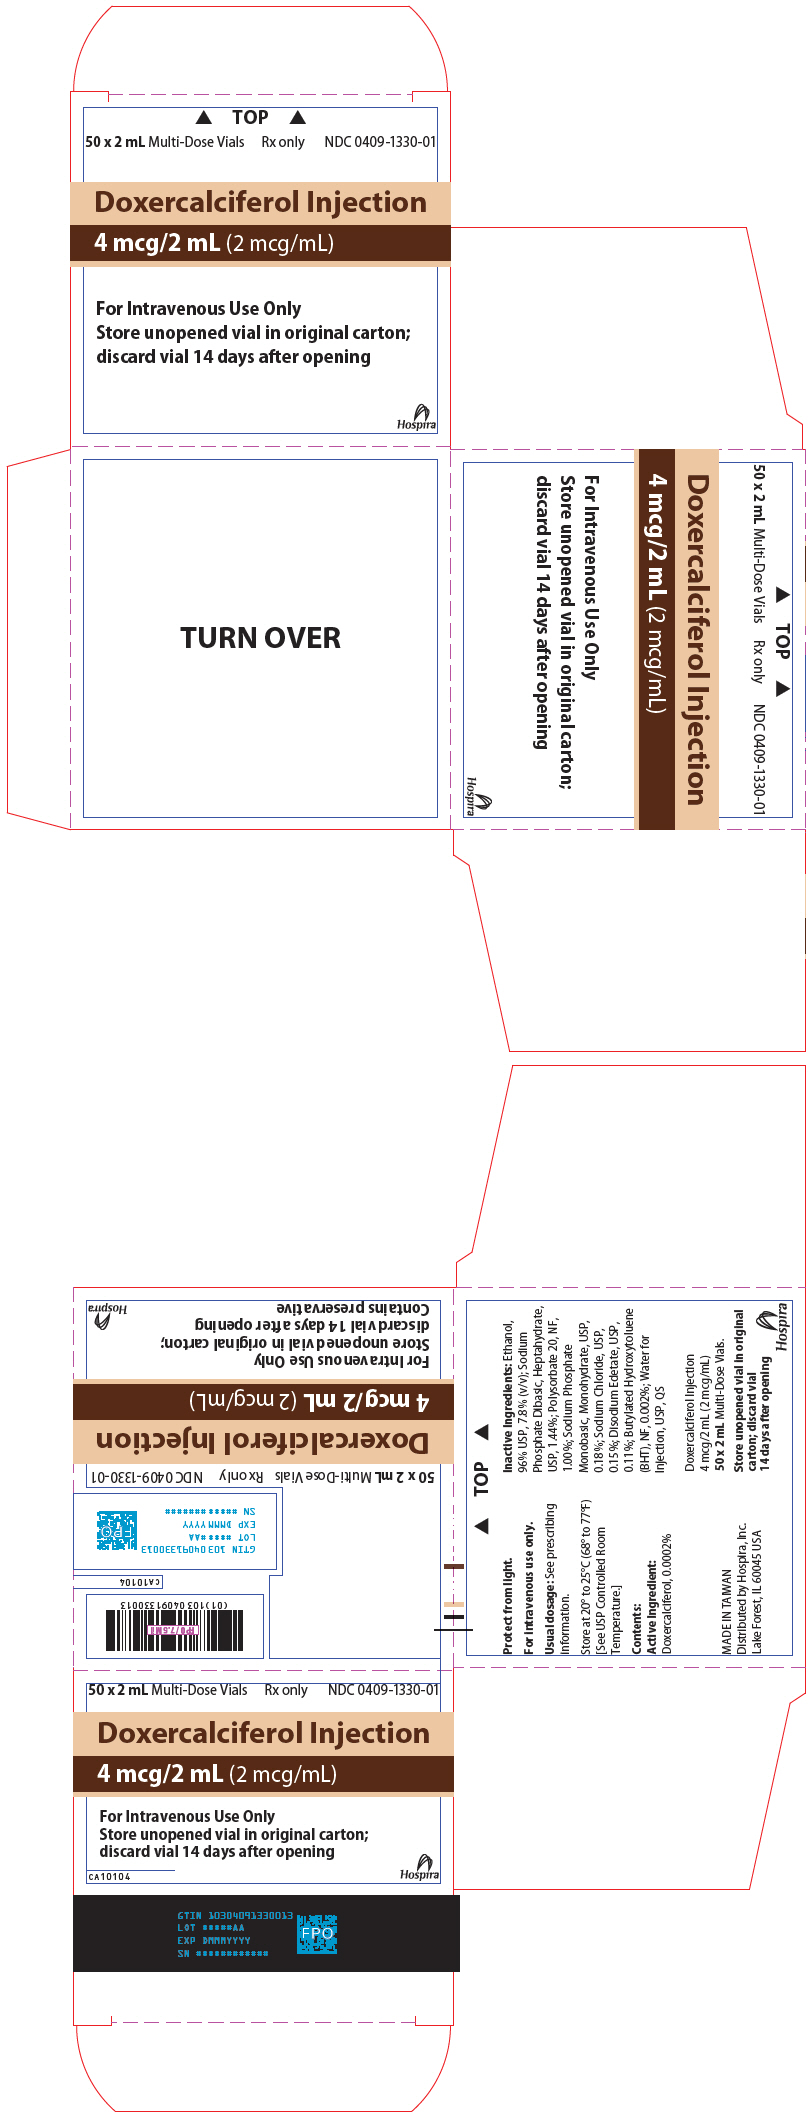 PRINCIPAL DISPLAY PANEL - 2 mL Vial Carton